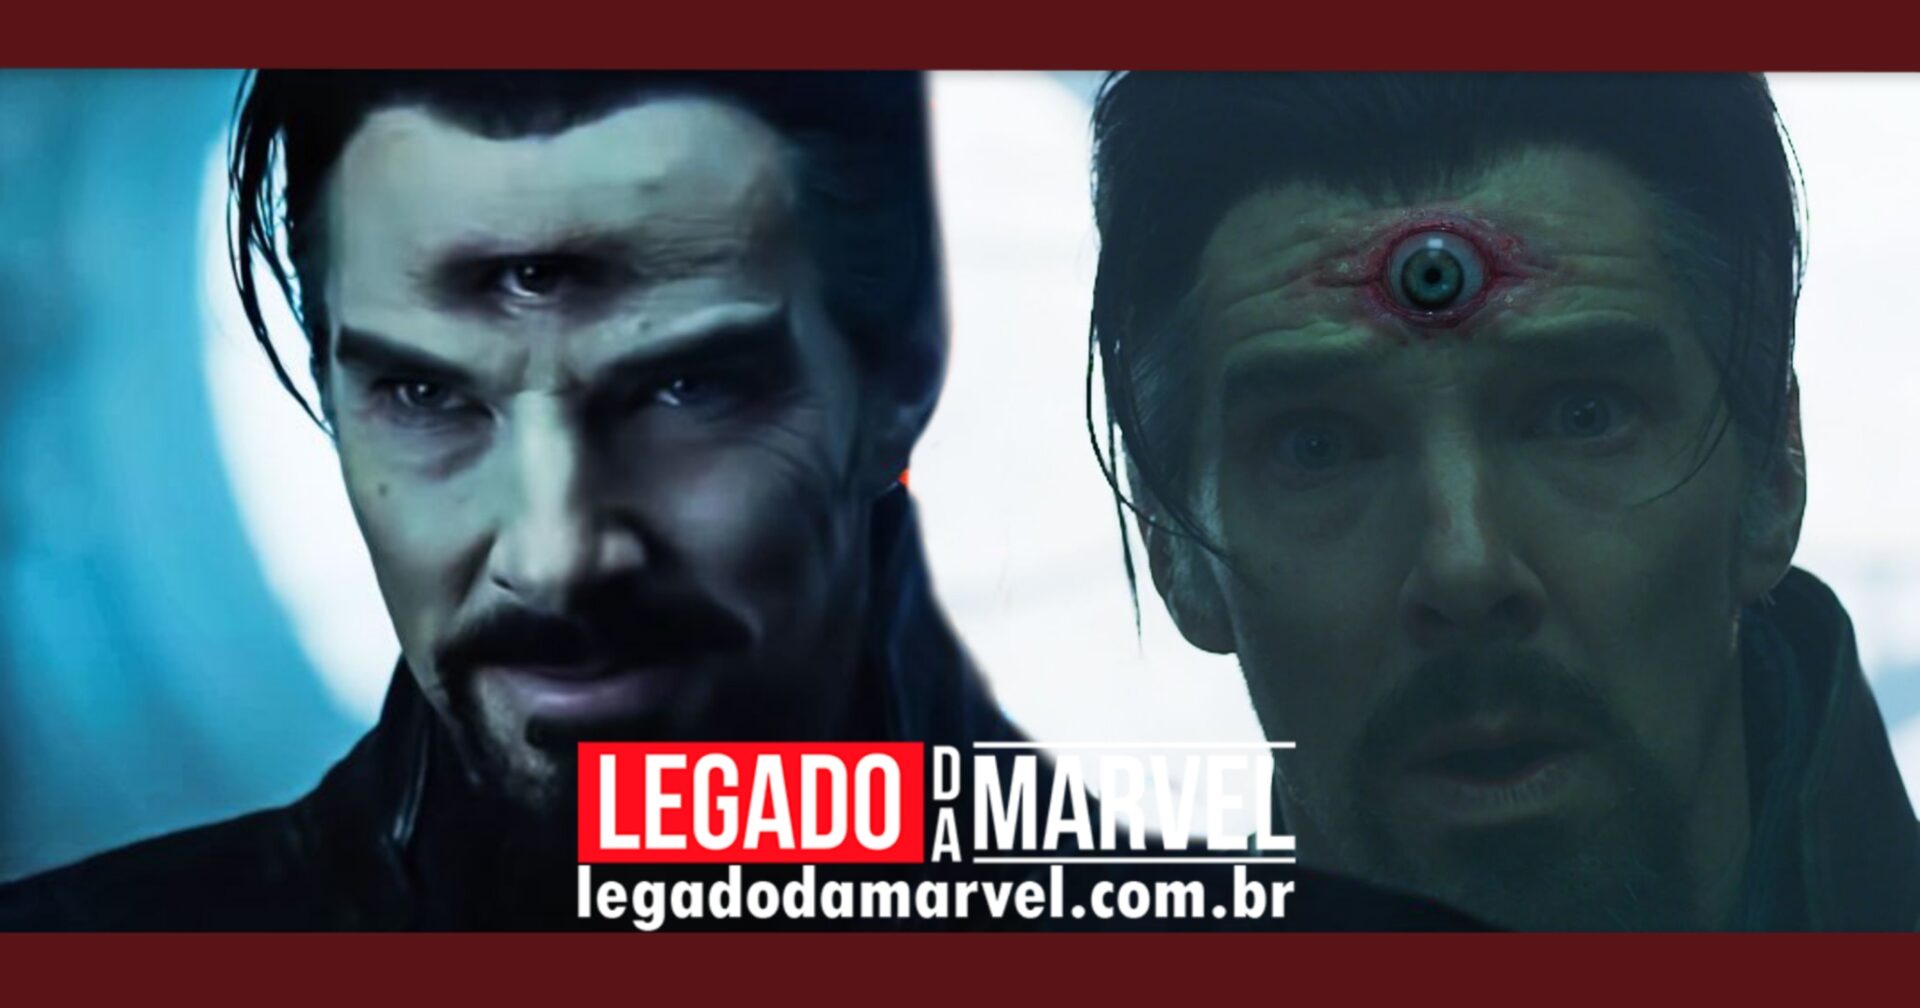 Universo Marvel Brasil on X: Visuais descartados do terceiro olho do Doutor  Estranho em #MultiversoDaLoucura.  / X